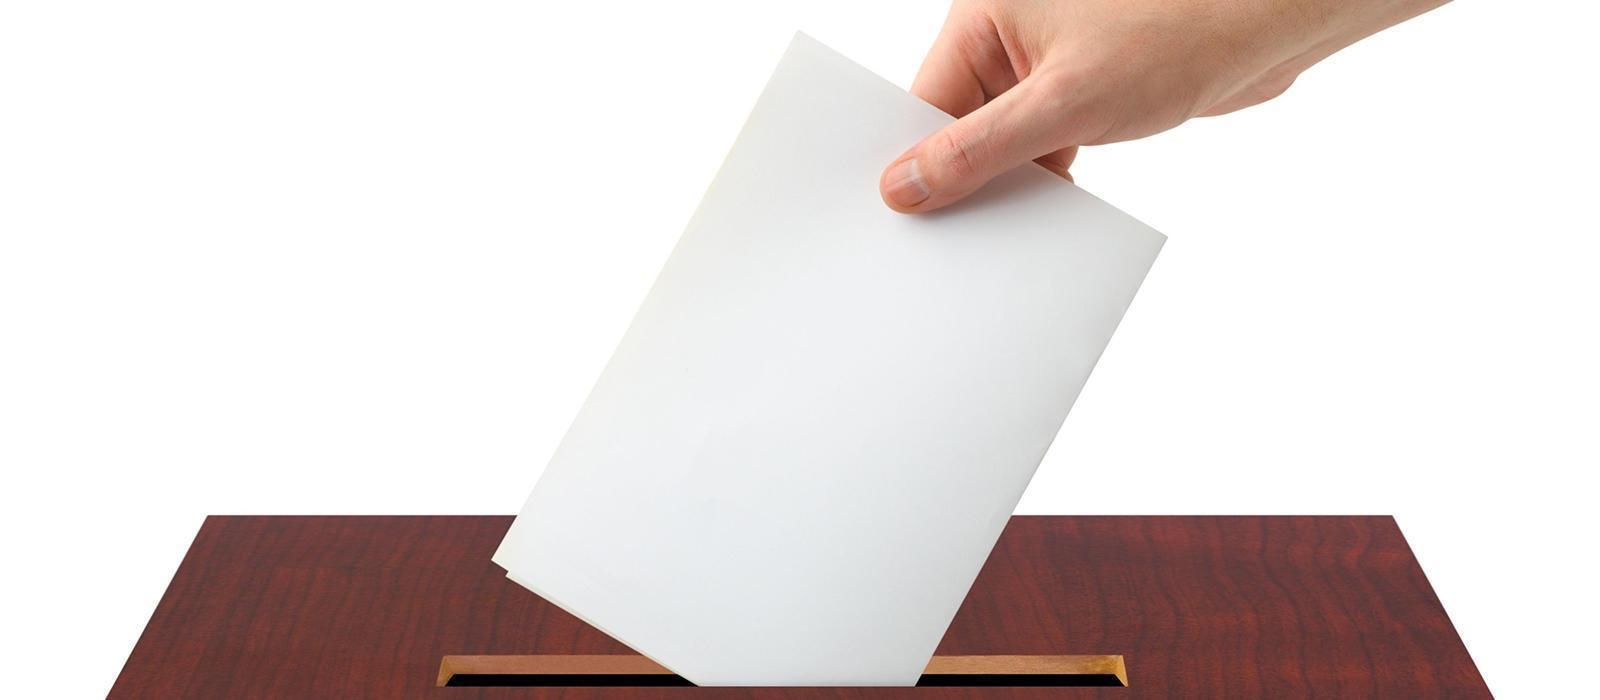 Λευκό ψηφοδέλτιο: Μύθοι, αλήθειες και πονηριές!